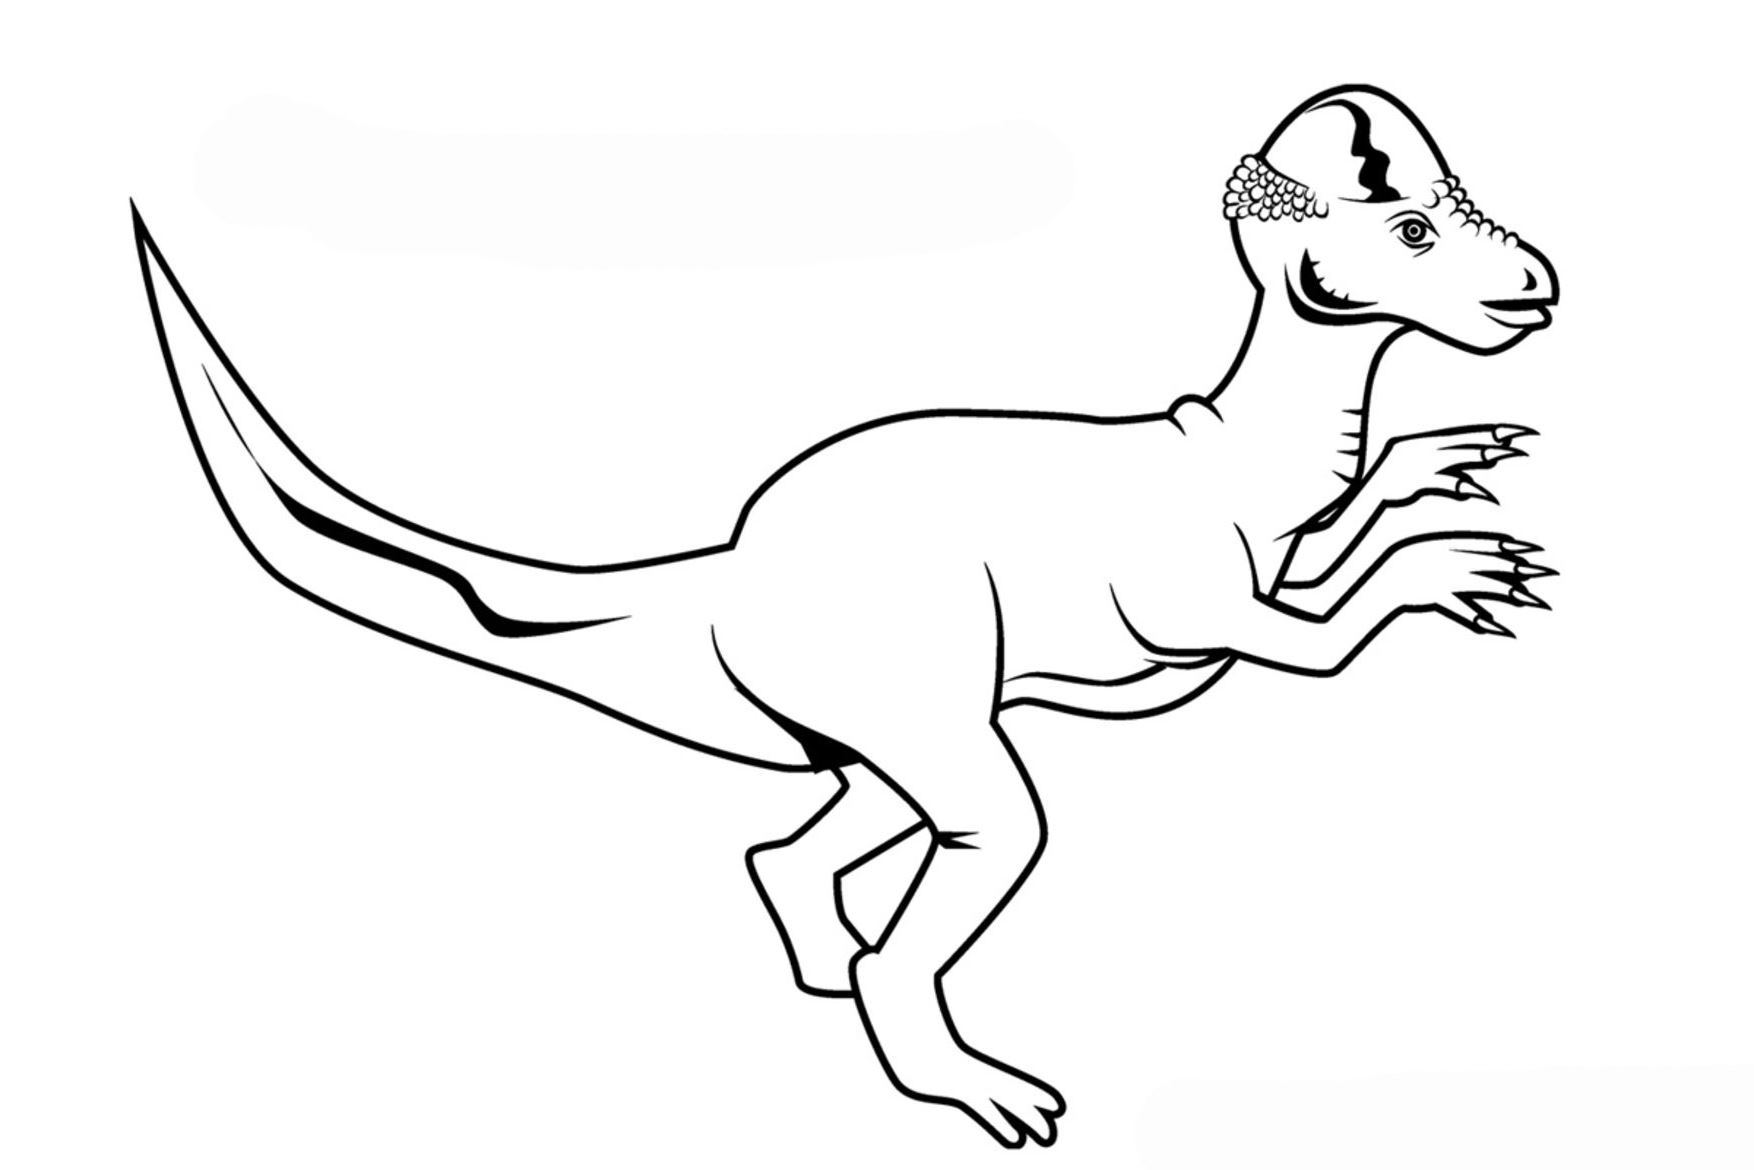 Динозавр Пахицефалозавр раскраска для детей